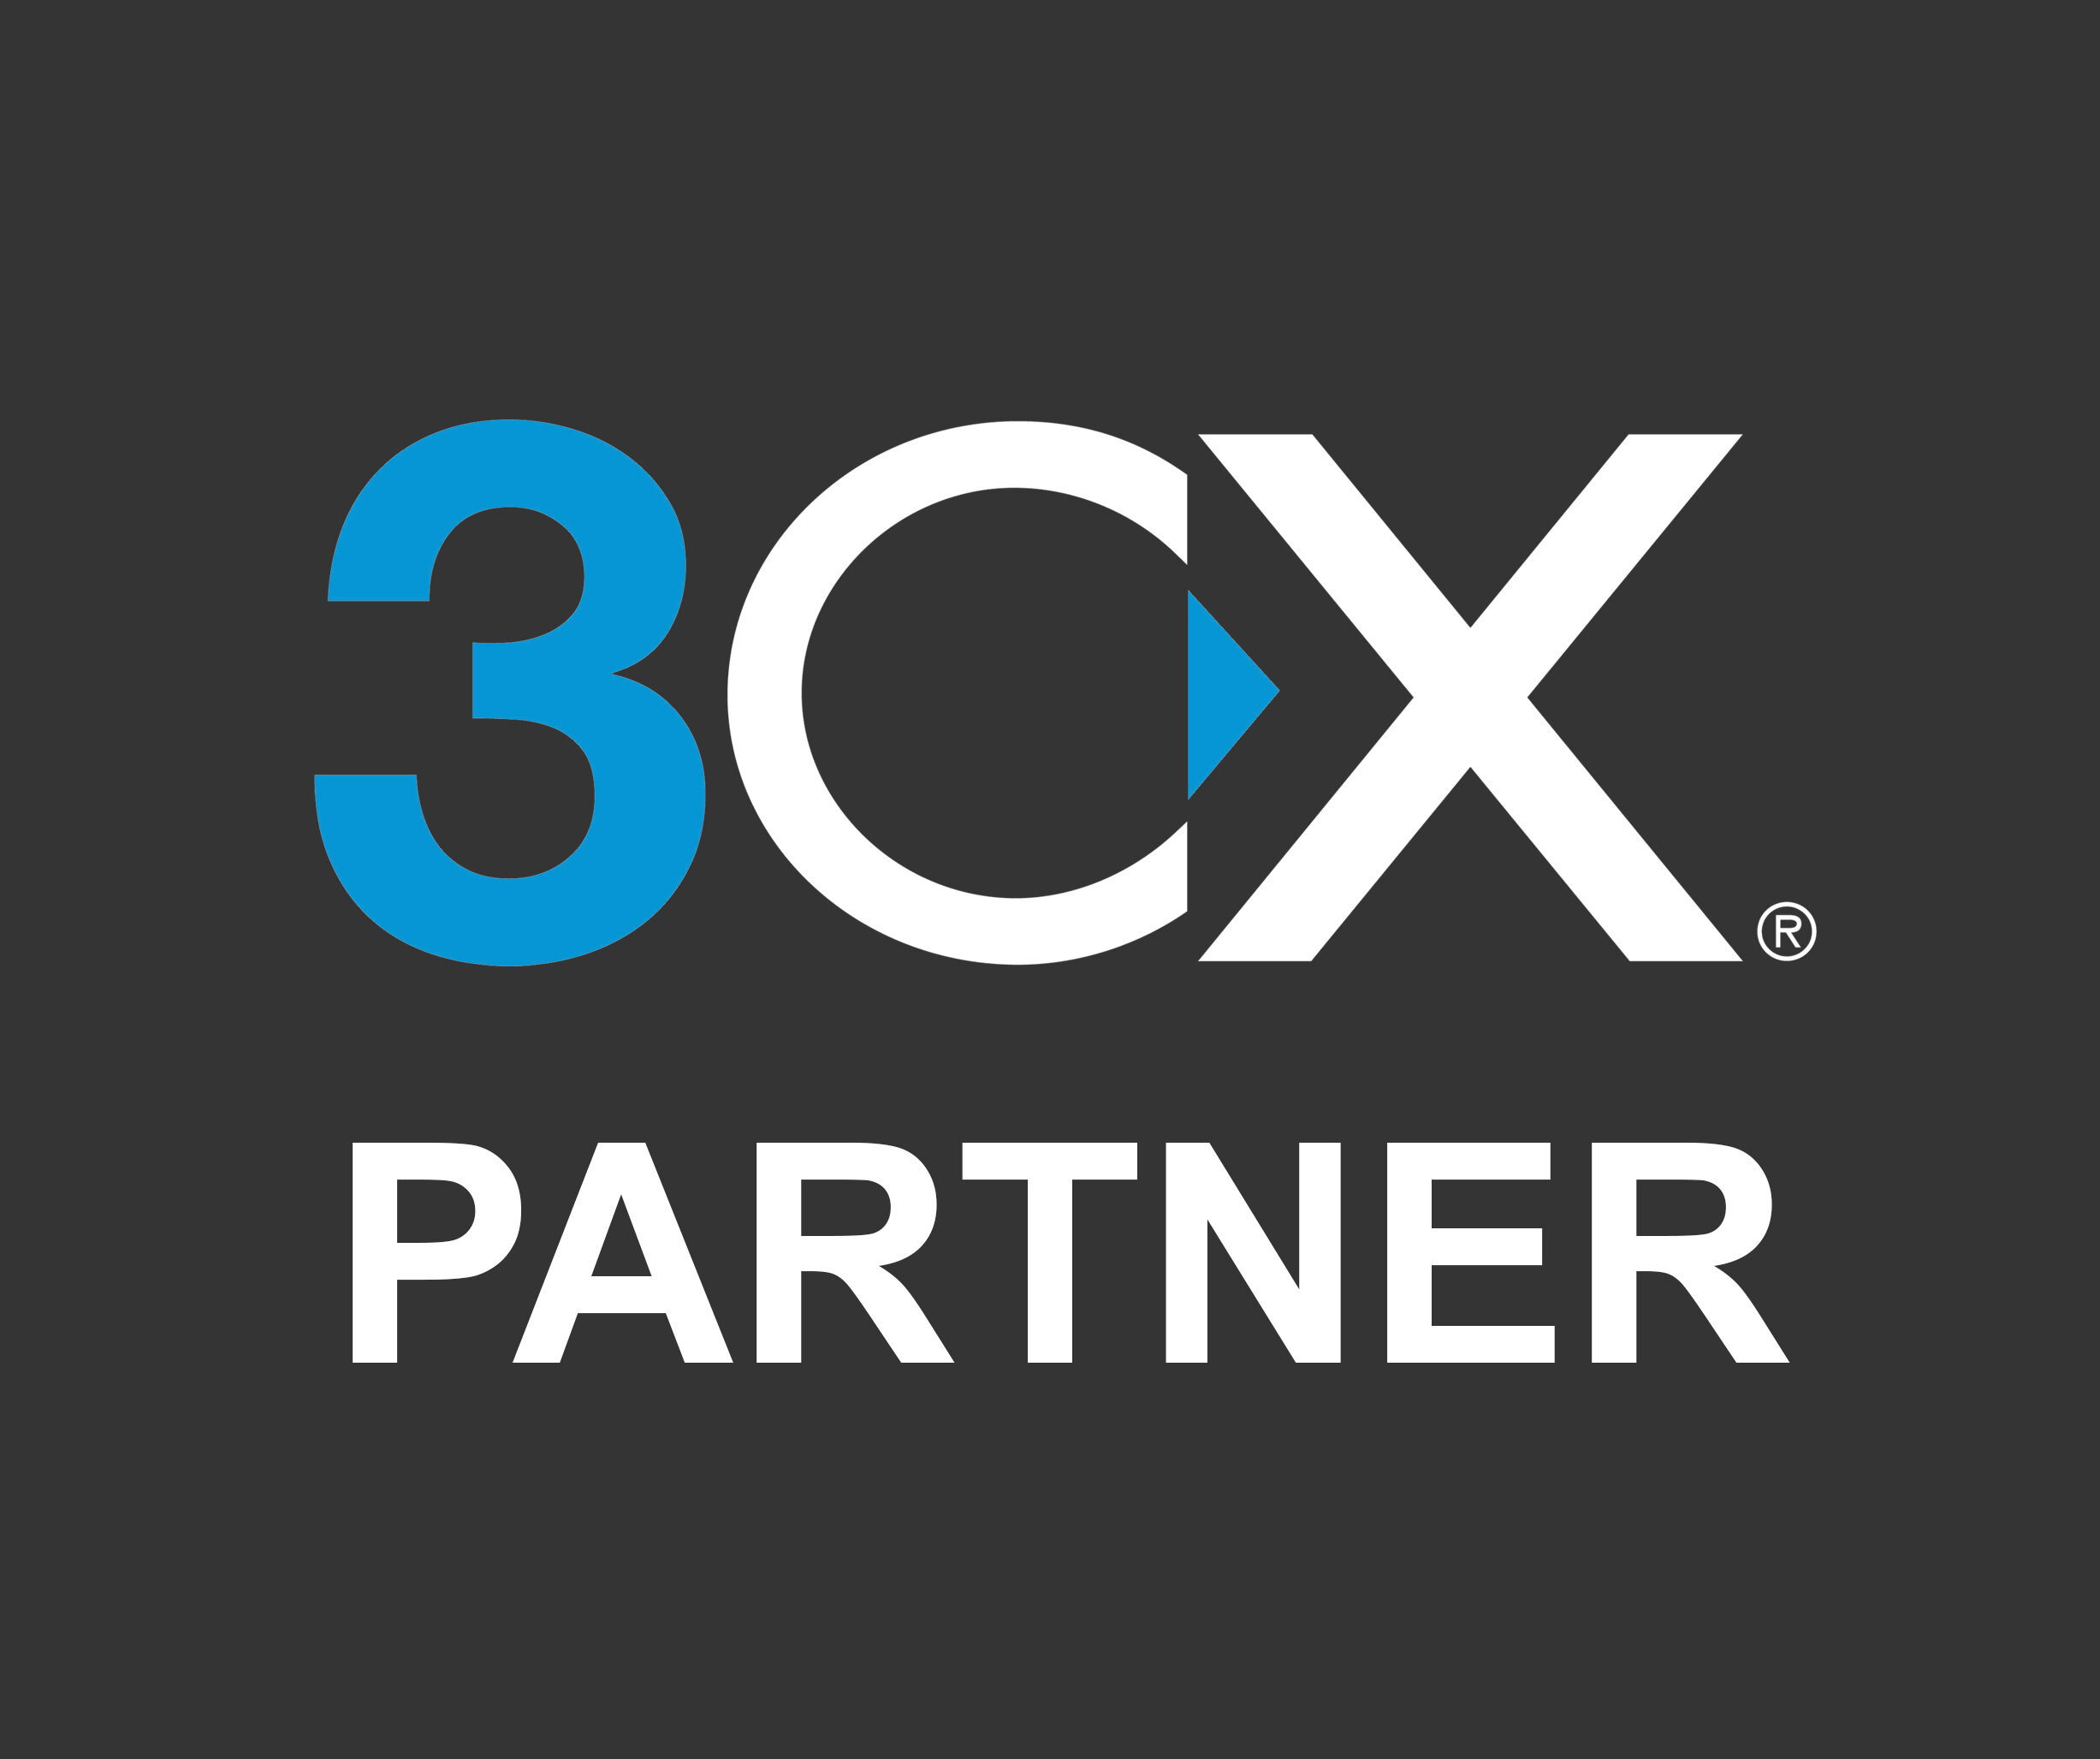 3CX Partner.jpg